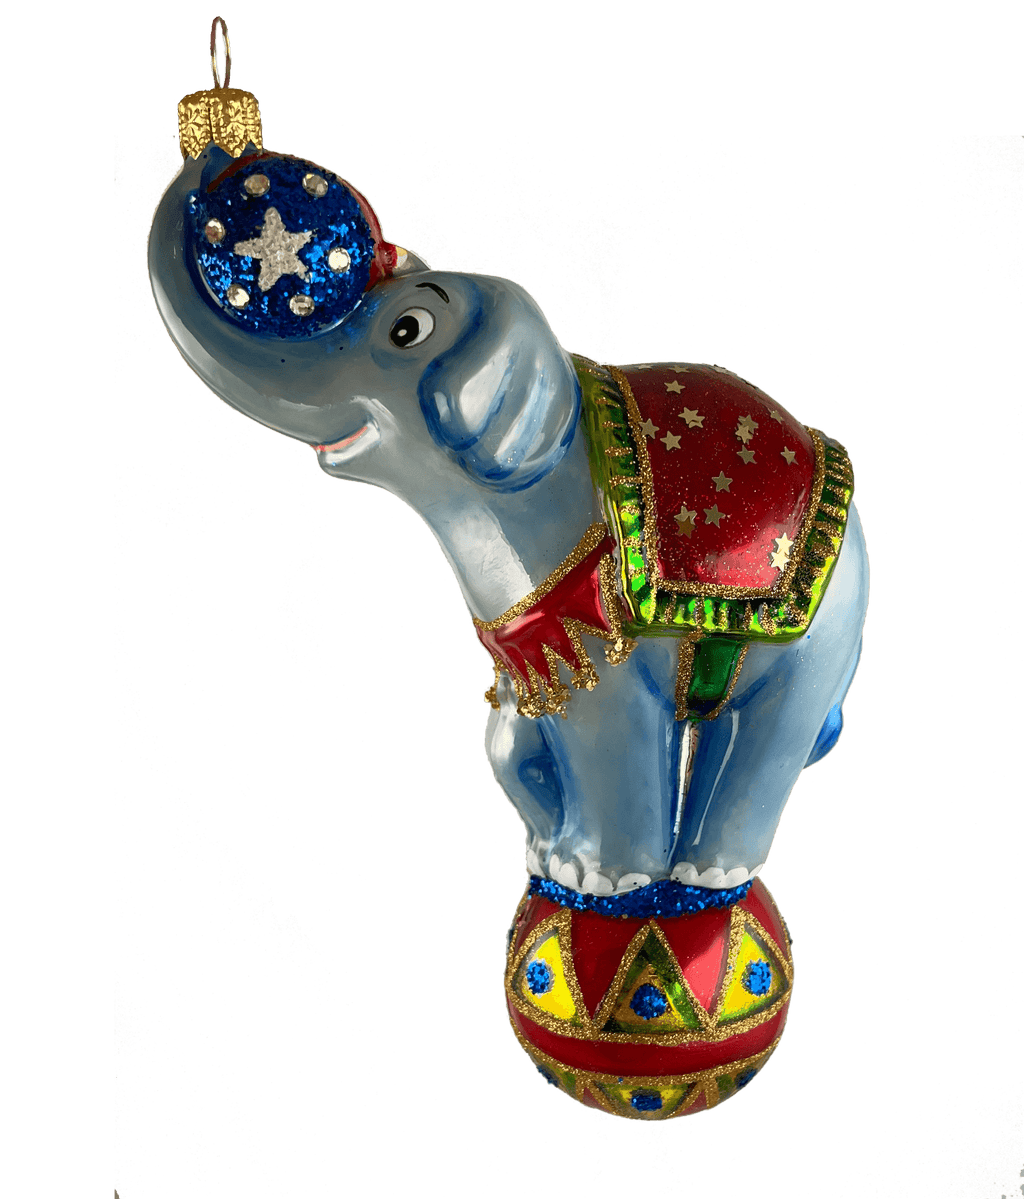 Elephant on a Ball - Mysteria Christmas Ornaments